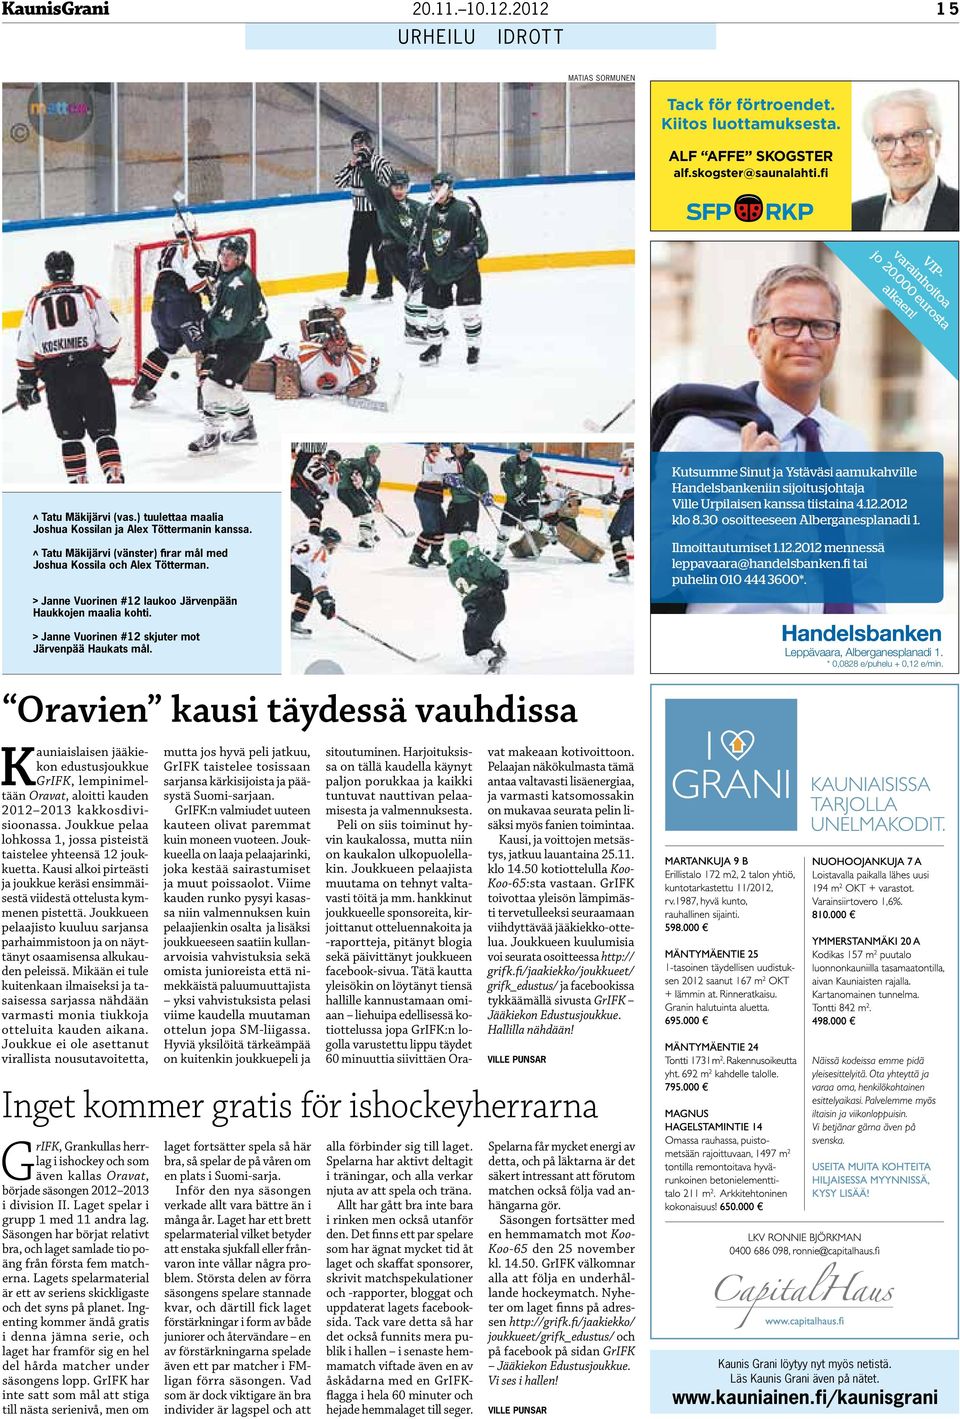 Janne Vuorinen #12 laukoo Järvenpään Haukkojen maalia kohti. Janne Vuorinen #12 skjuter mot Järvenpää Haukats mål.